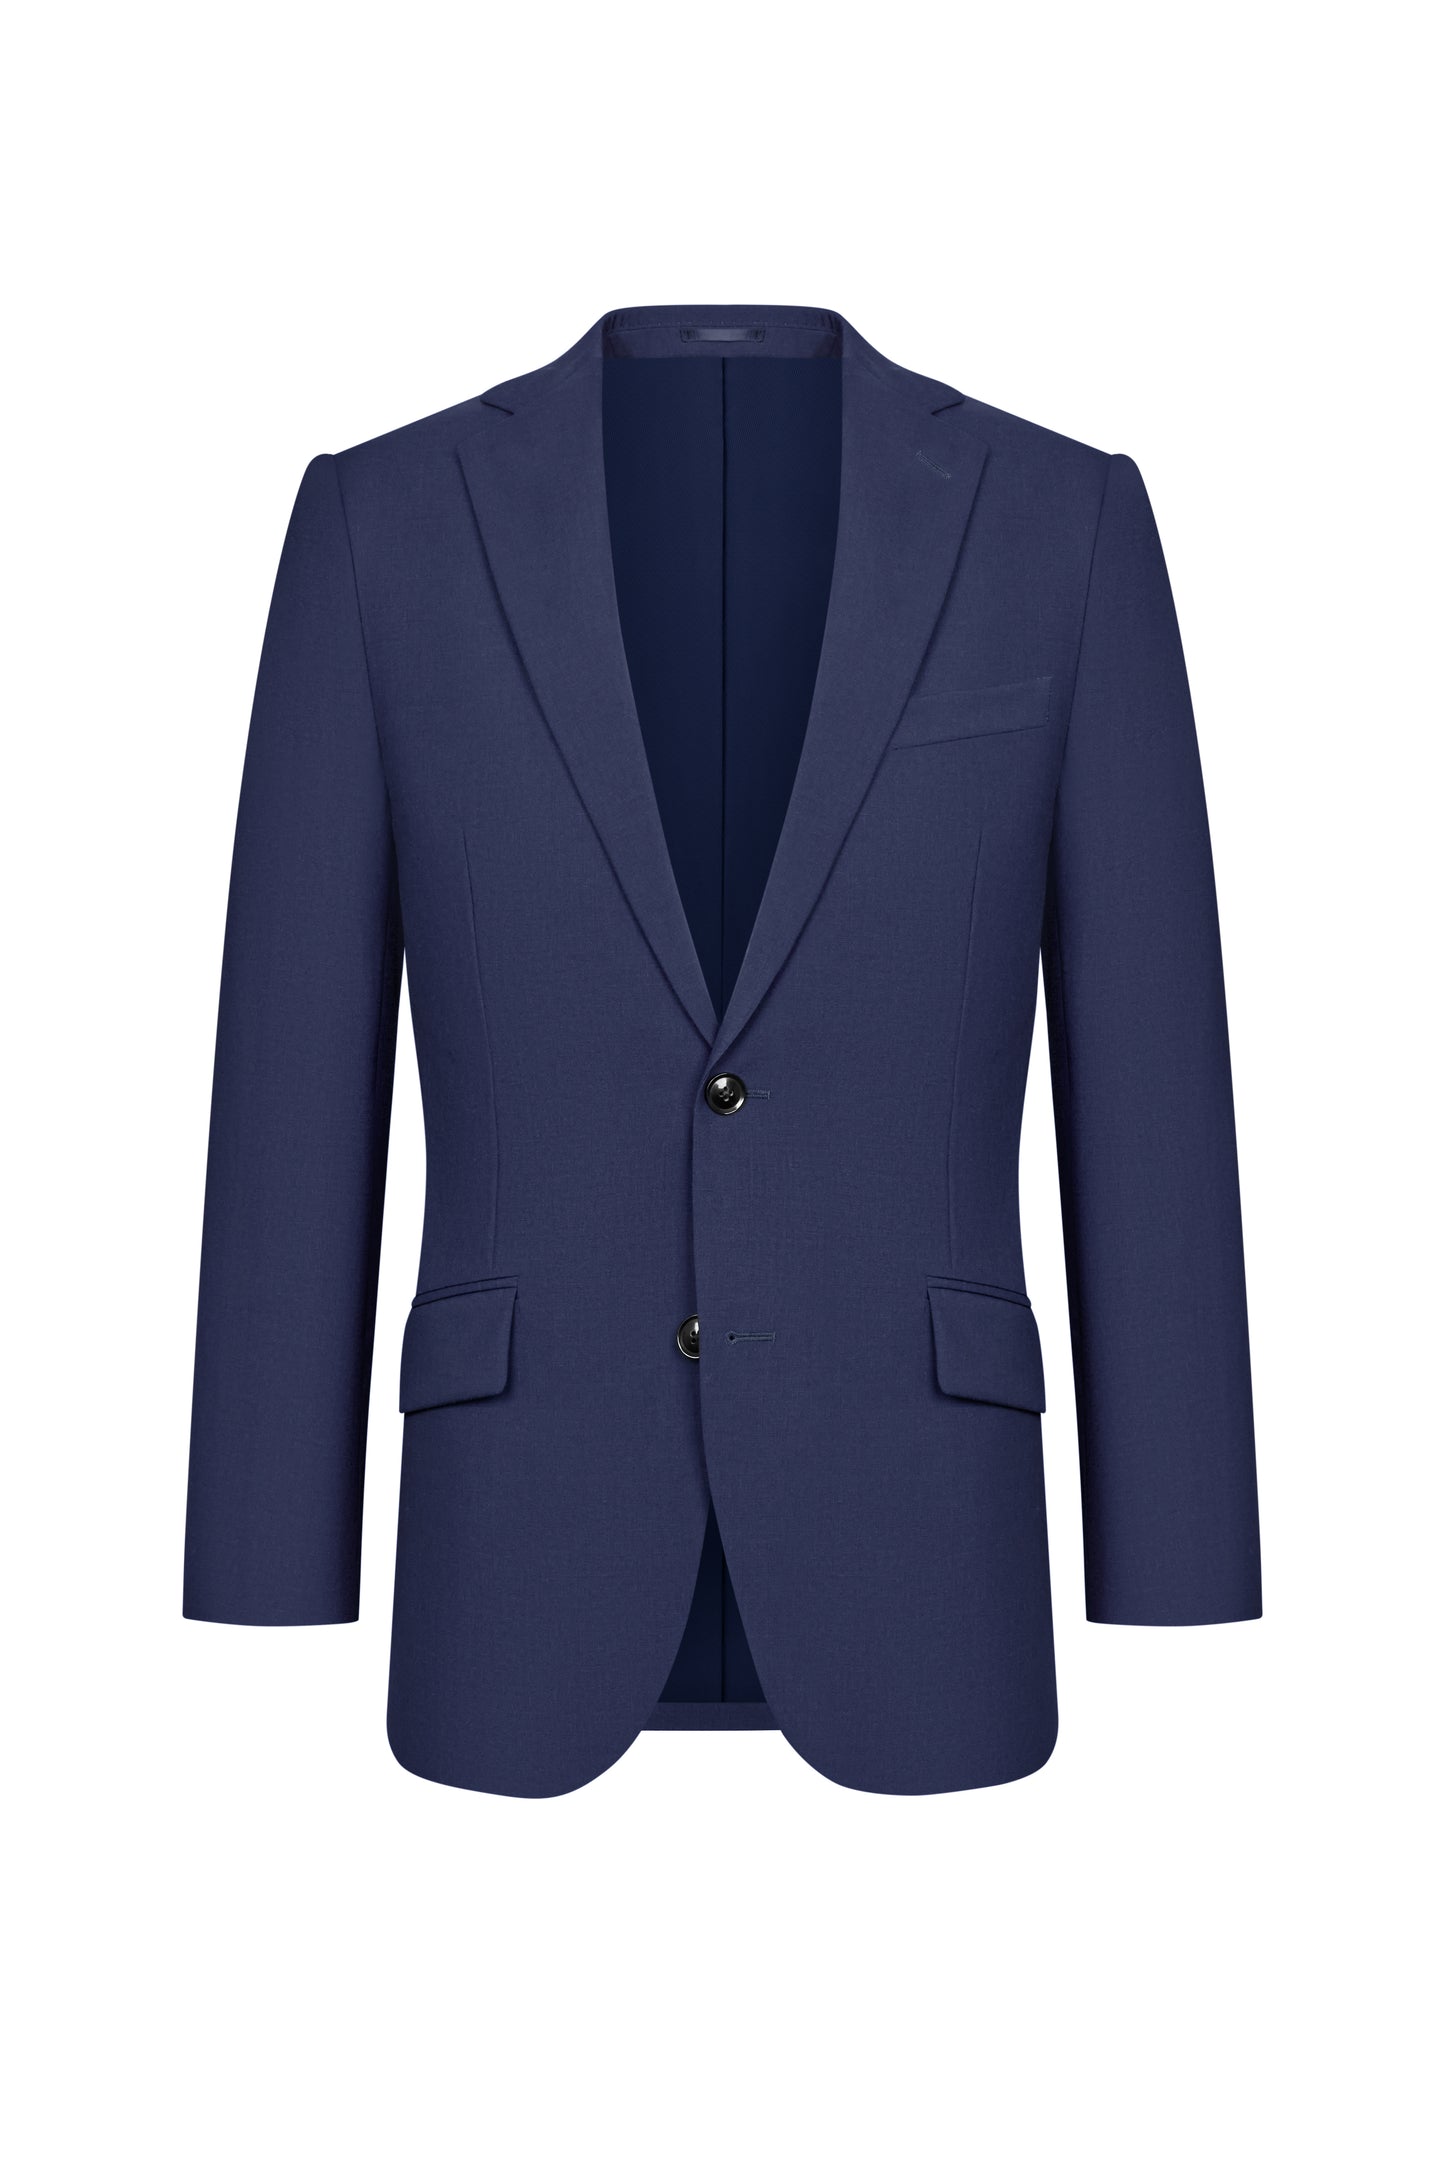 Royal Blue Plain Weave Custom Suit